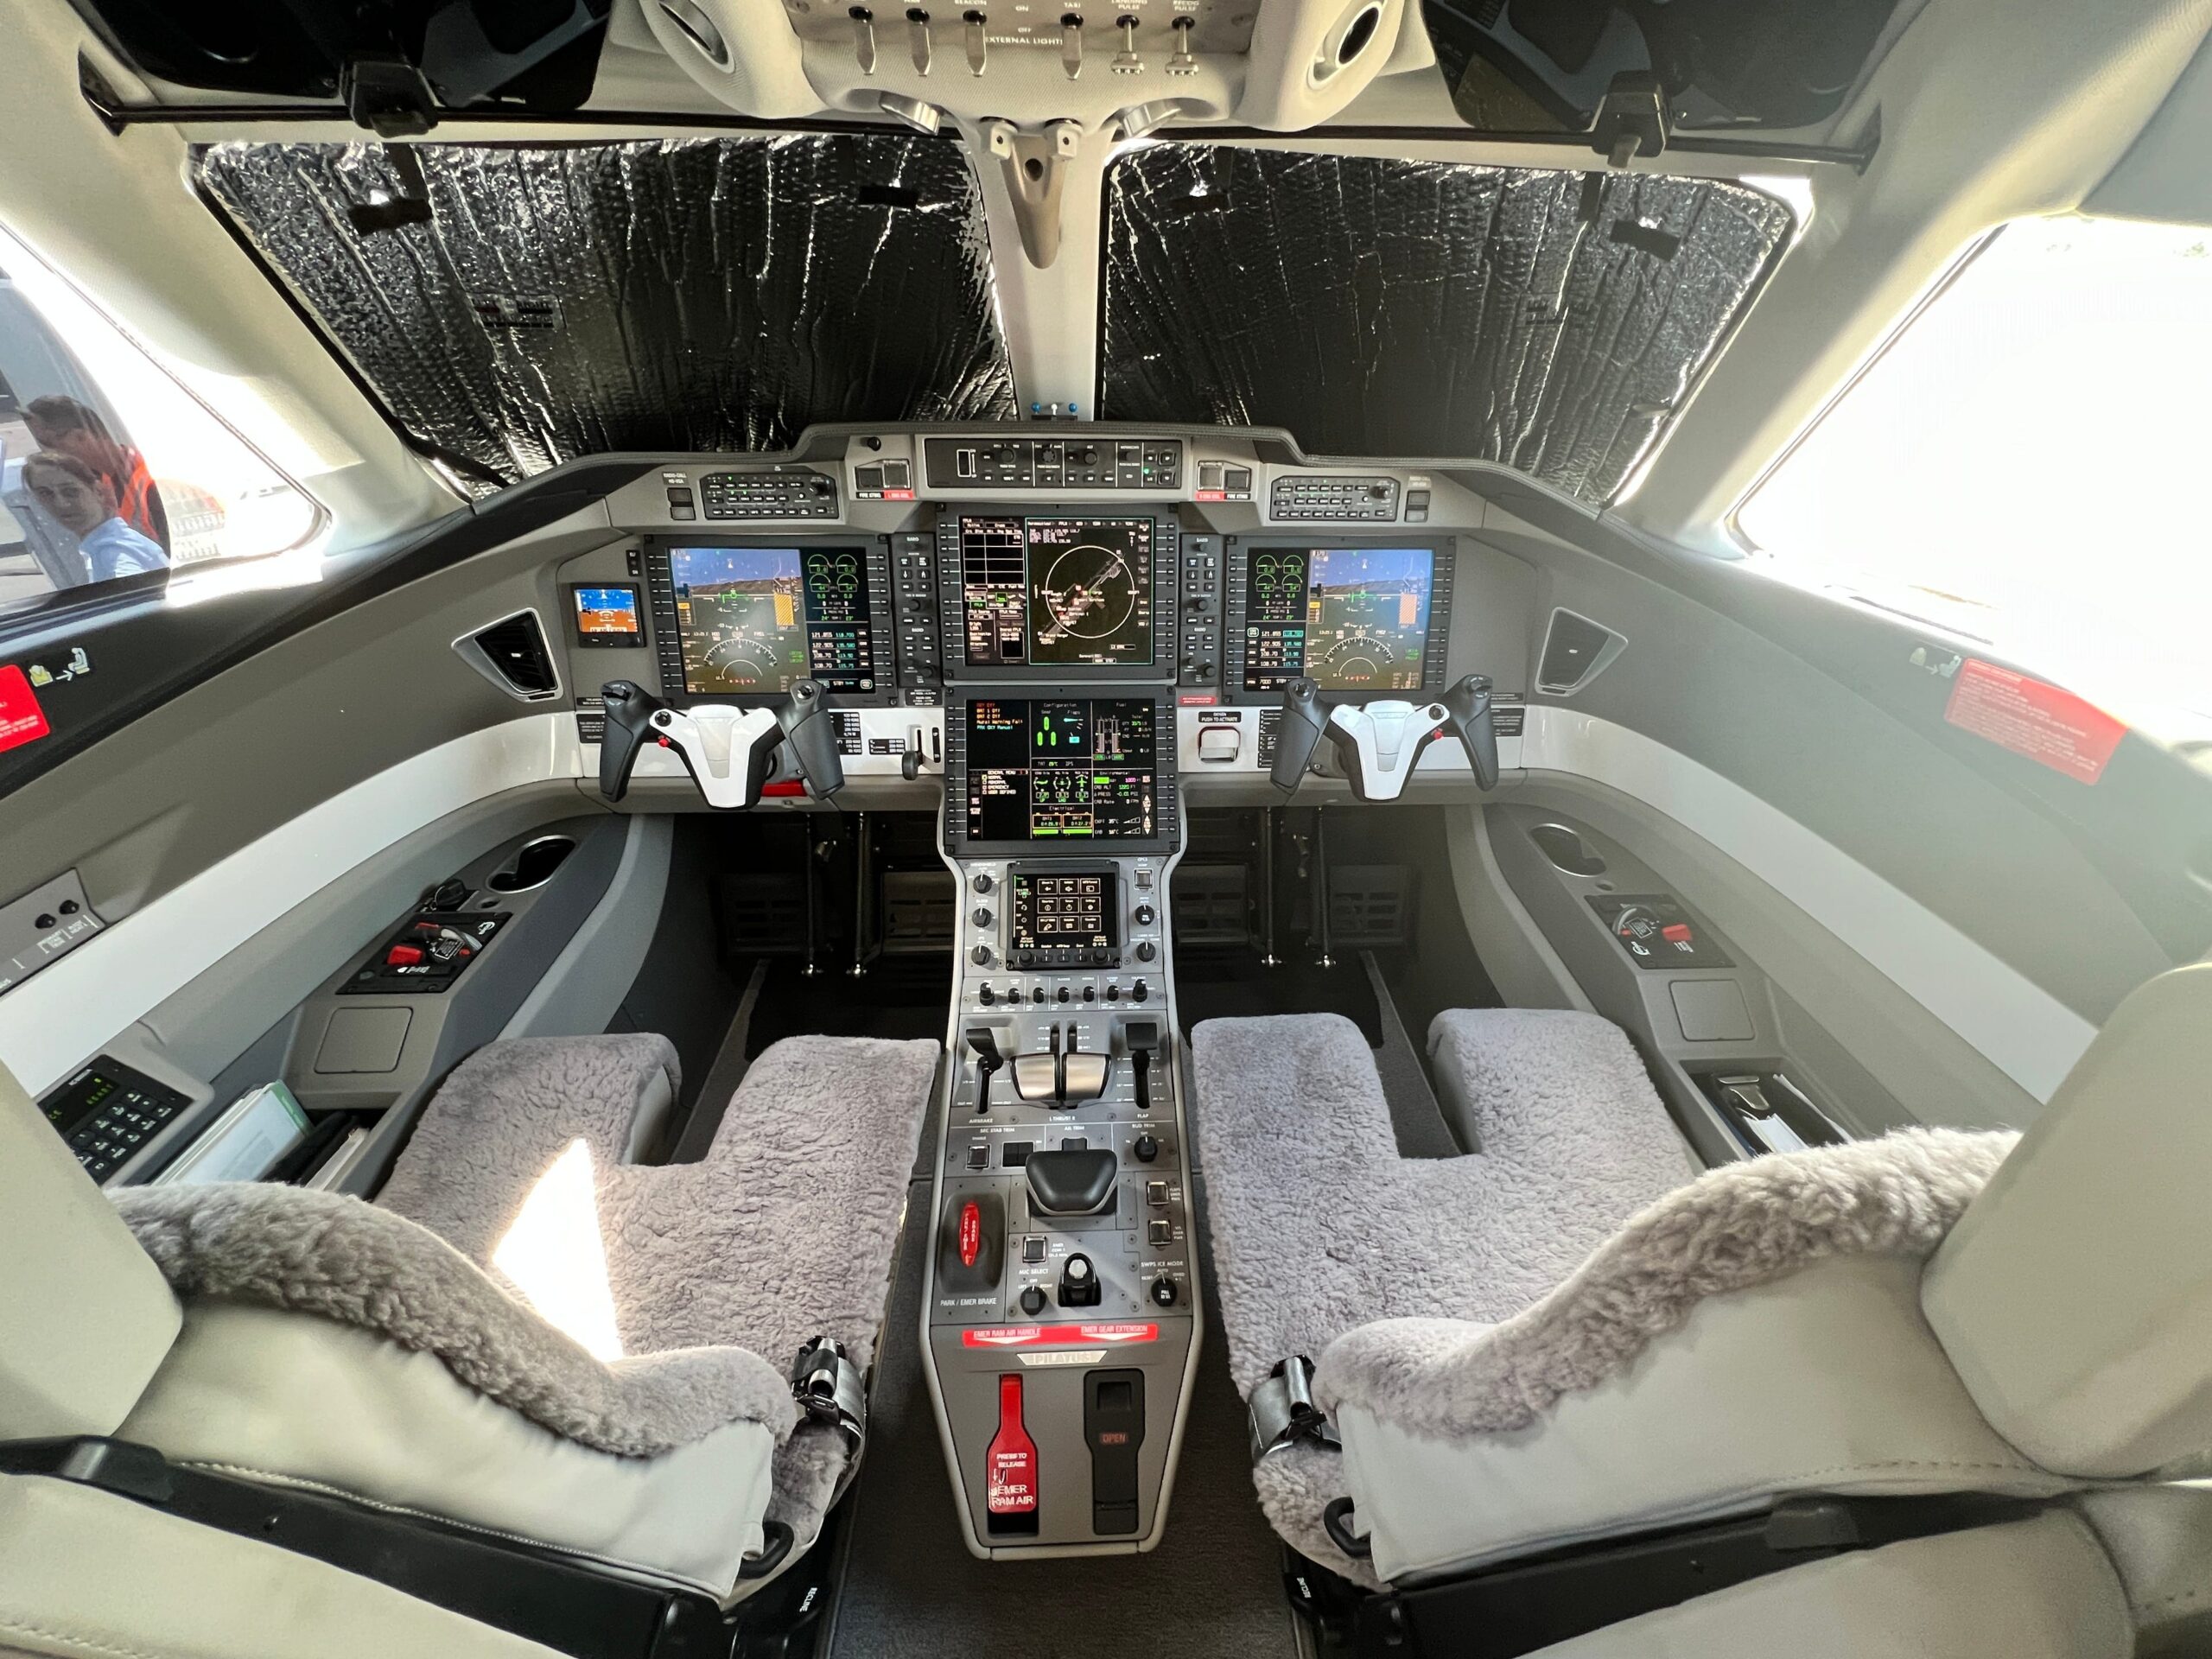 The cockpit of a Pilatus PC-24